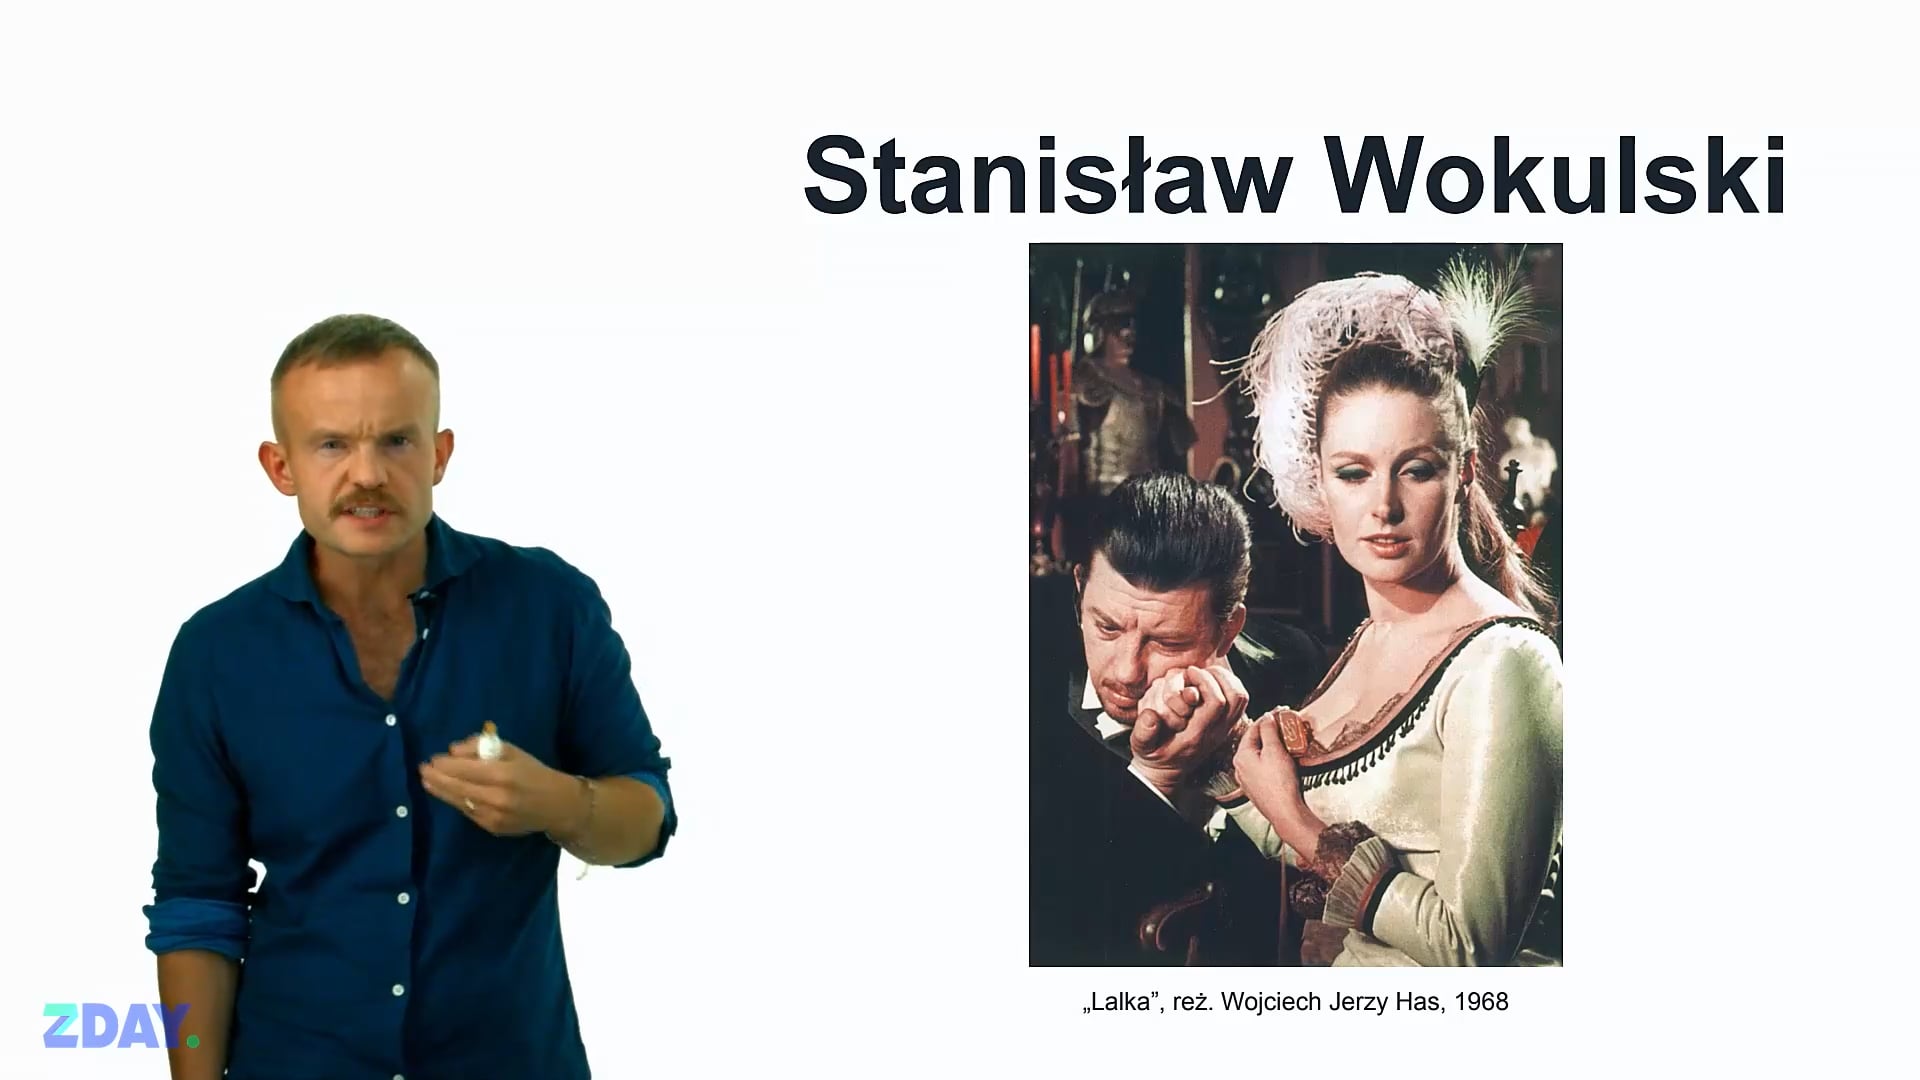 Miniaturka materiału wideo na temat: Stanisław Wokulski – romantyk i pozytywista. Kliknij, aby obejrzeć materiał.